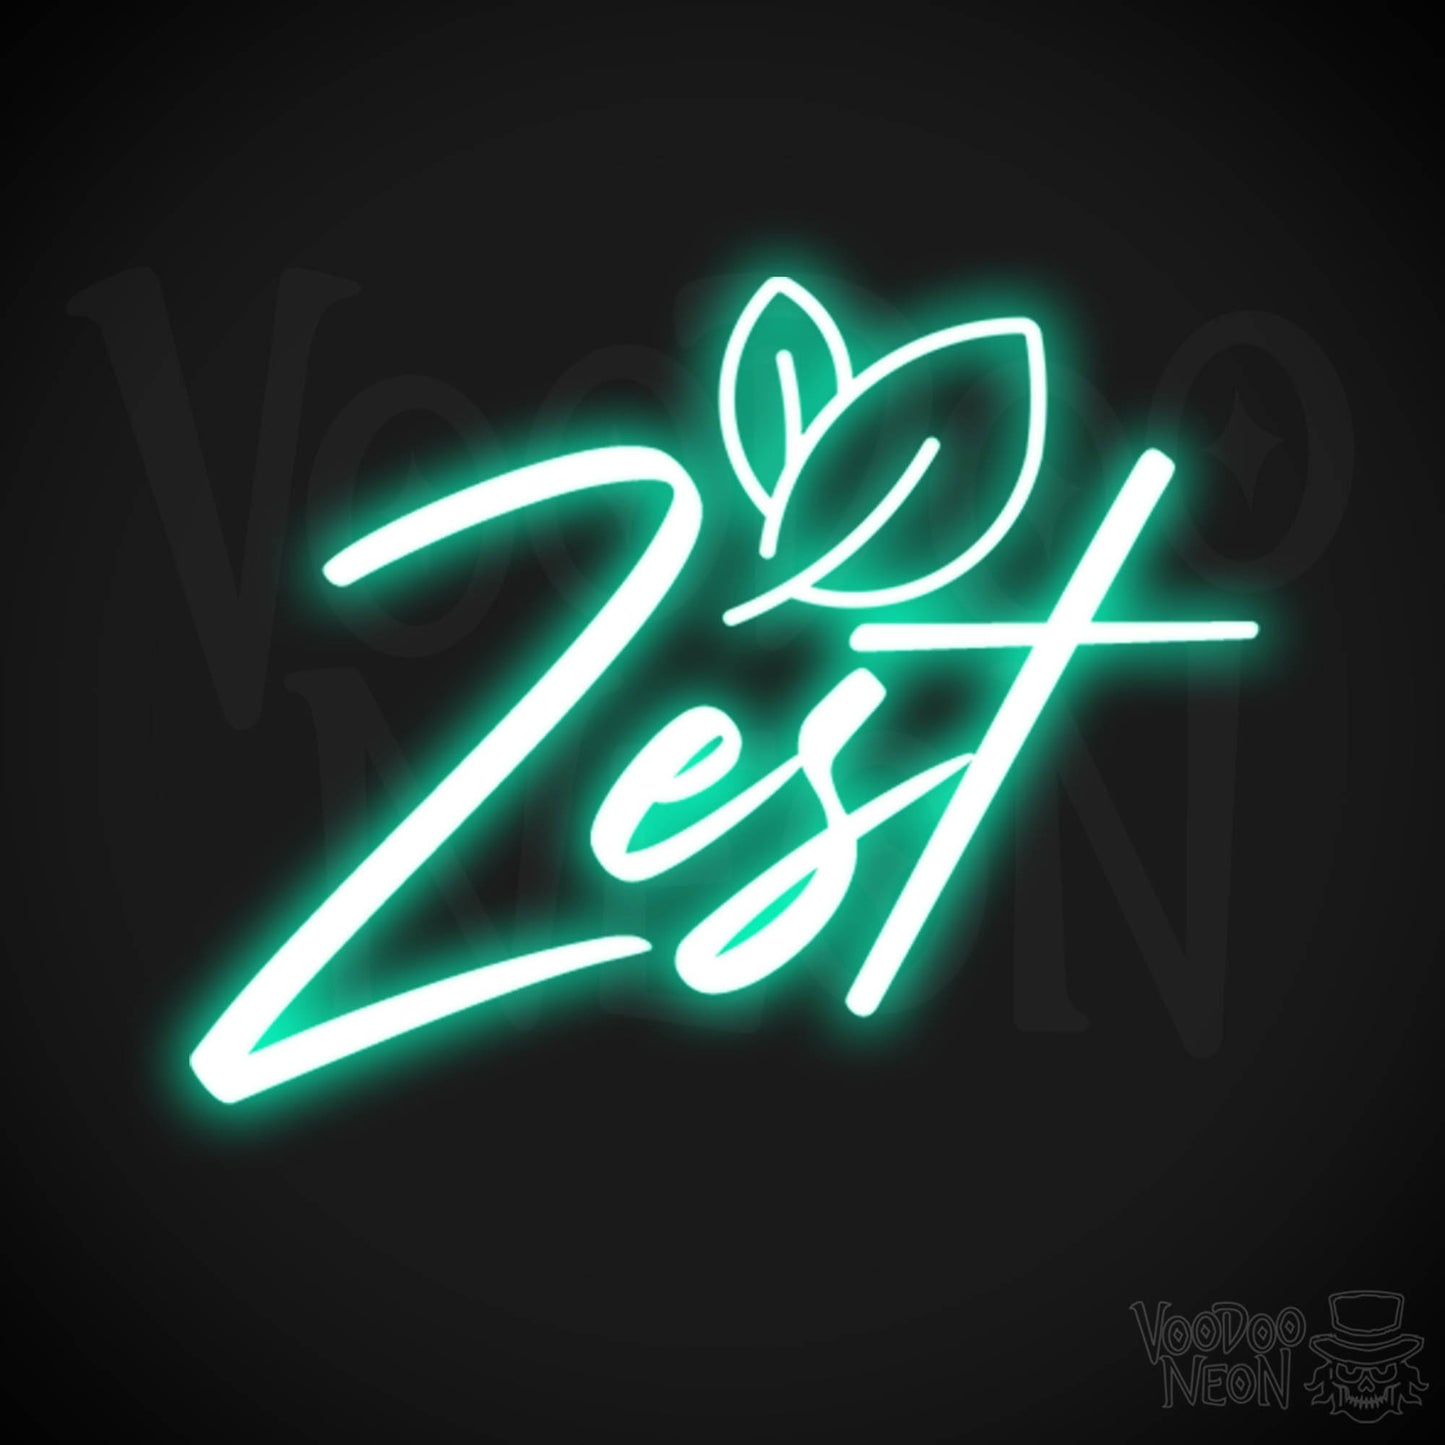 Zest Neon Sign - Neon Zest Sign - Color Light Green